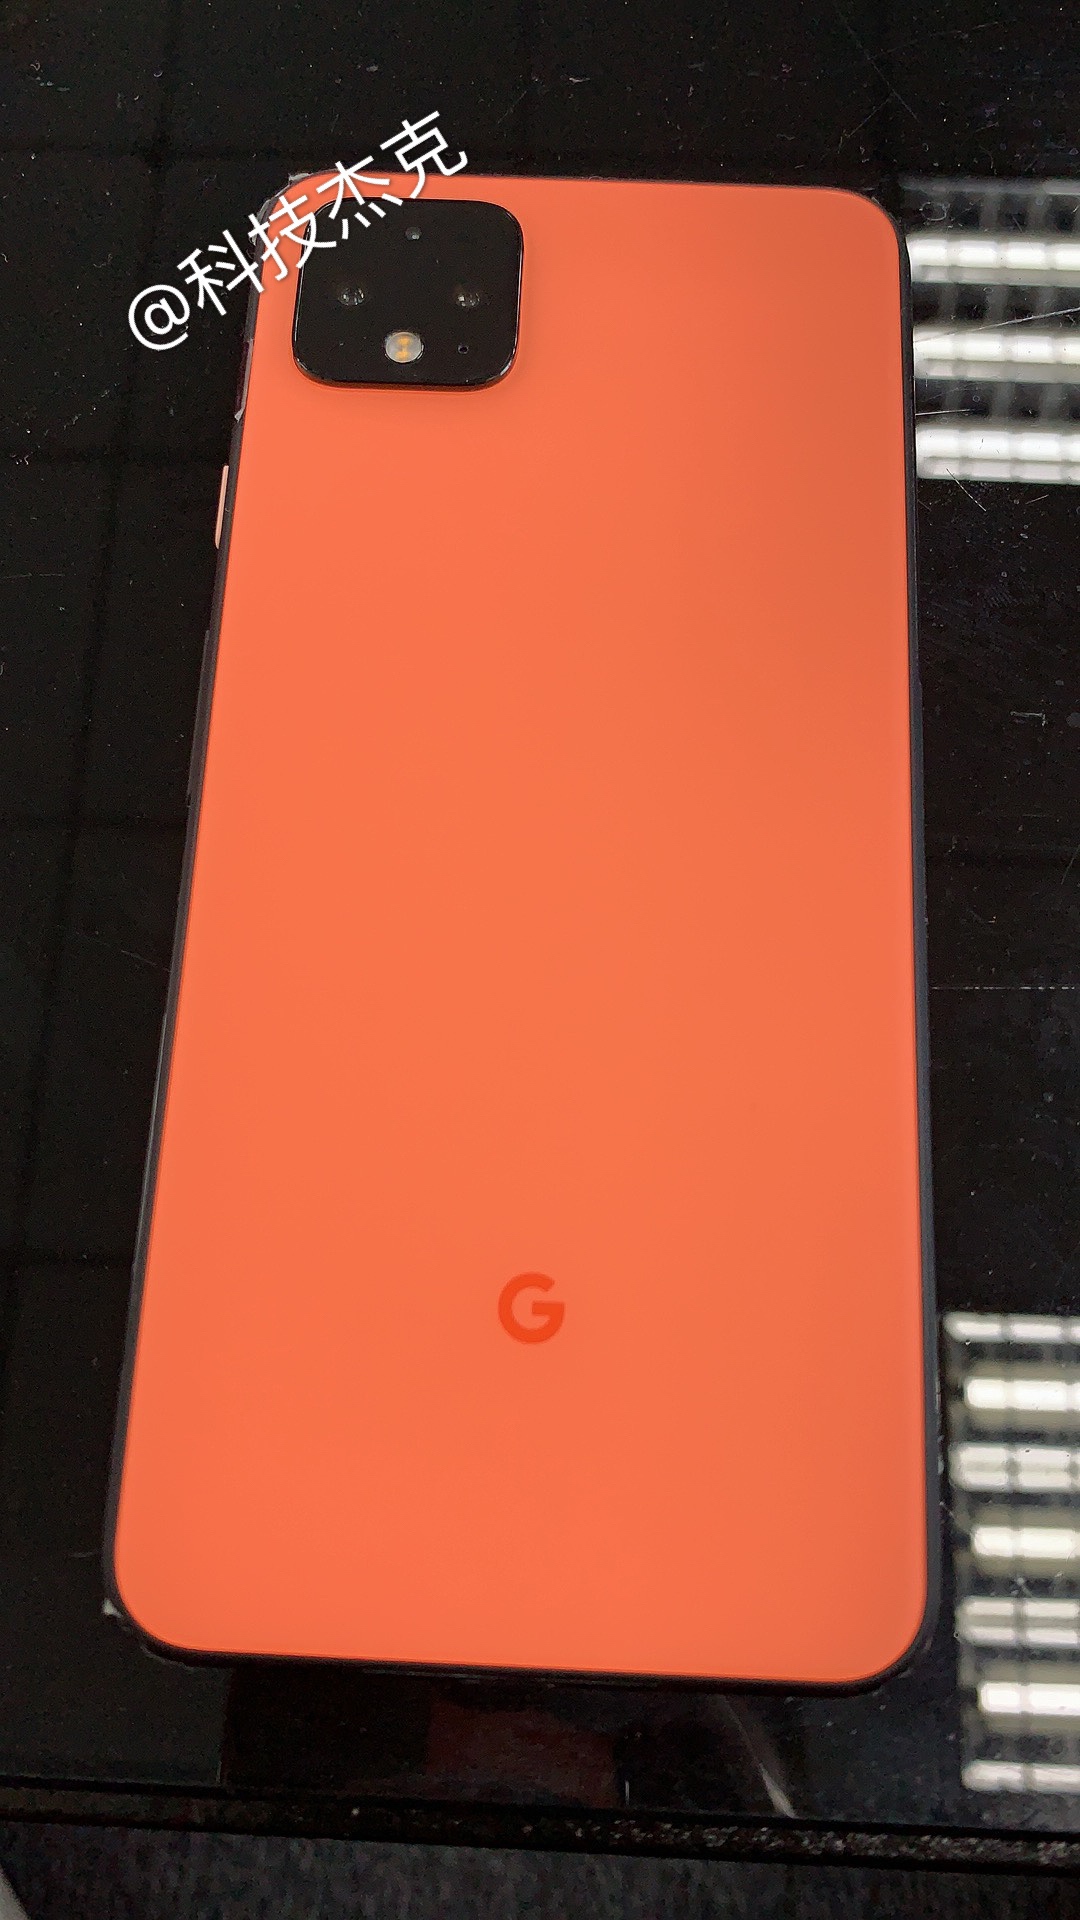 Google Pixel 4 bocor dengan warna "Coral" baru 1